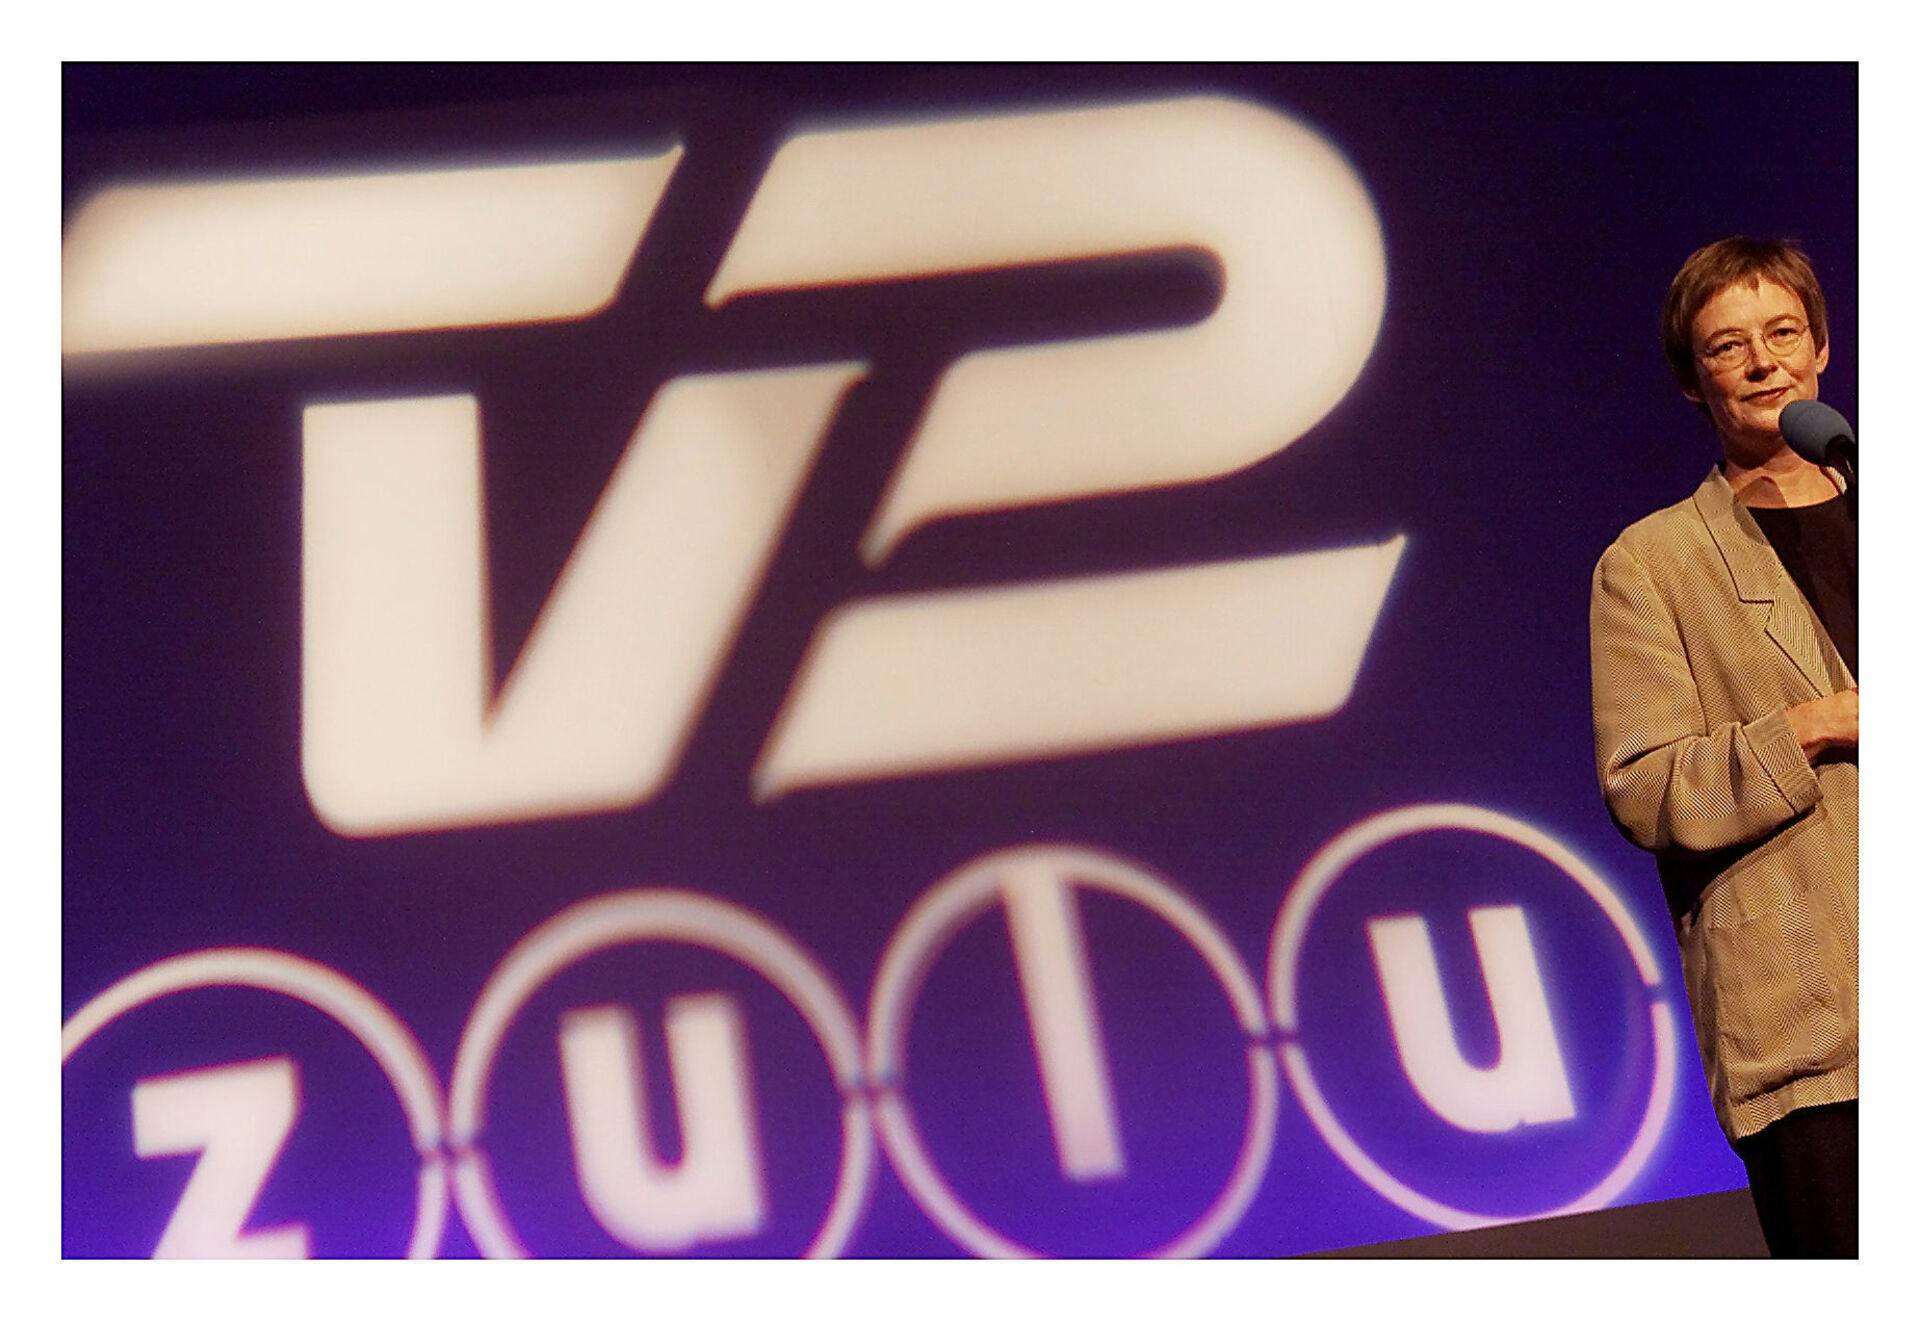 Pressemøde ved præsentationen af TV 2 ZULU af daværende direktør for TV 2 Cristina Lage Hansen.